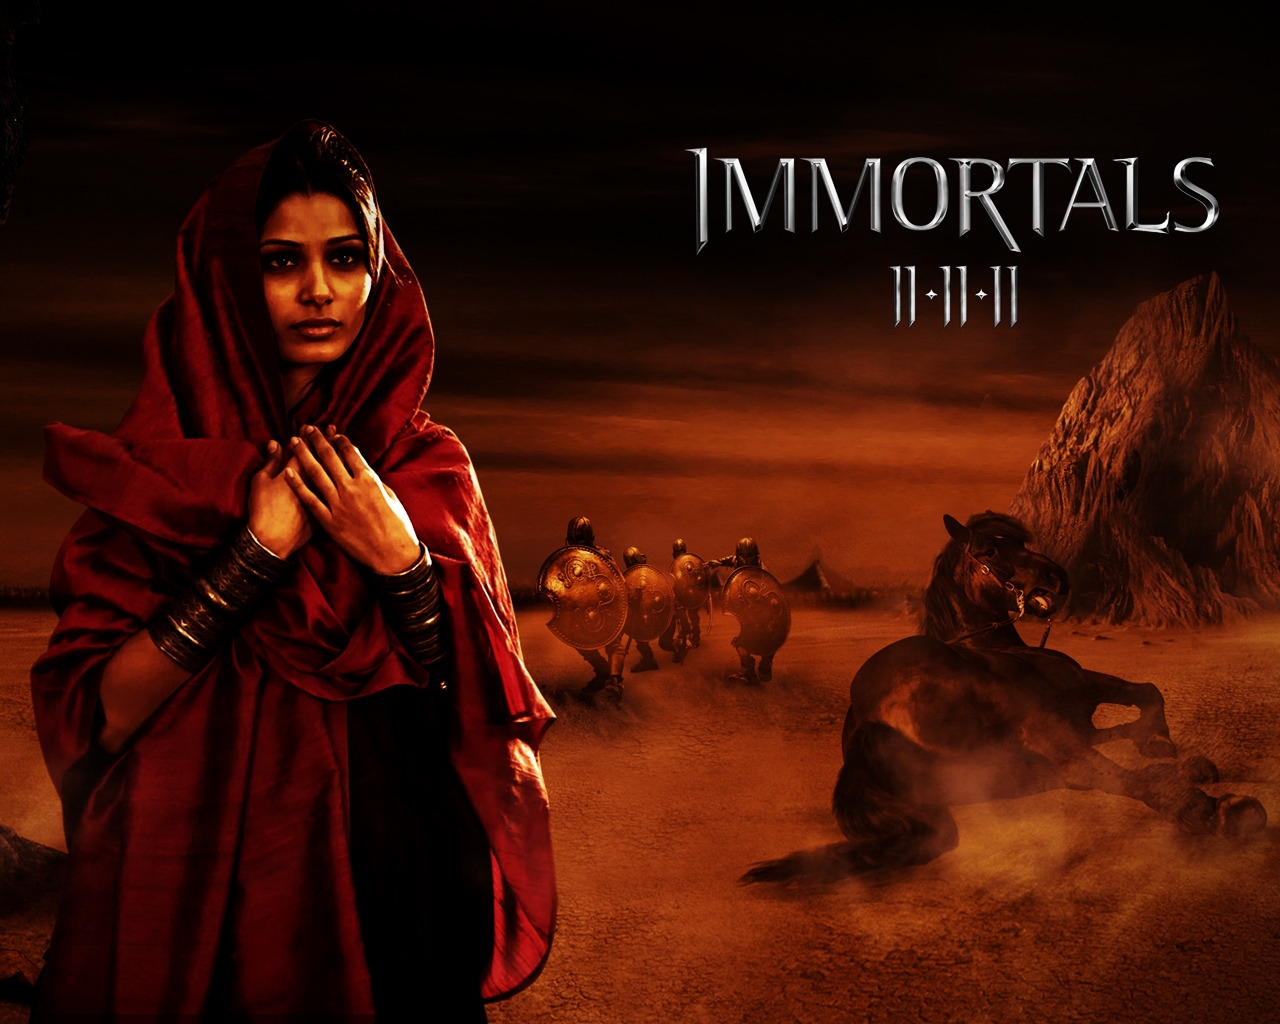 Immortals Movie Scene for 1280 x 1024 resolution